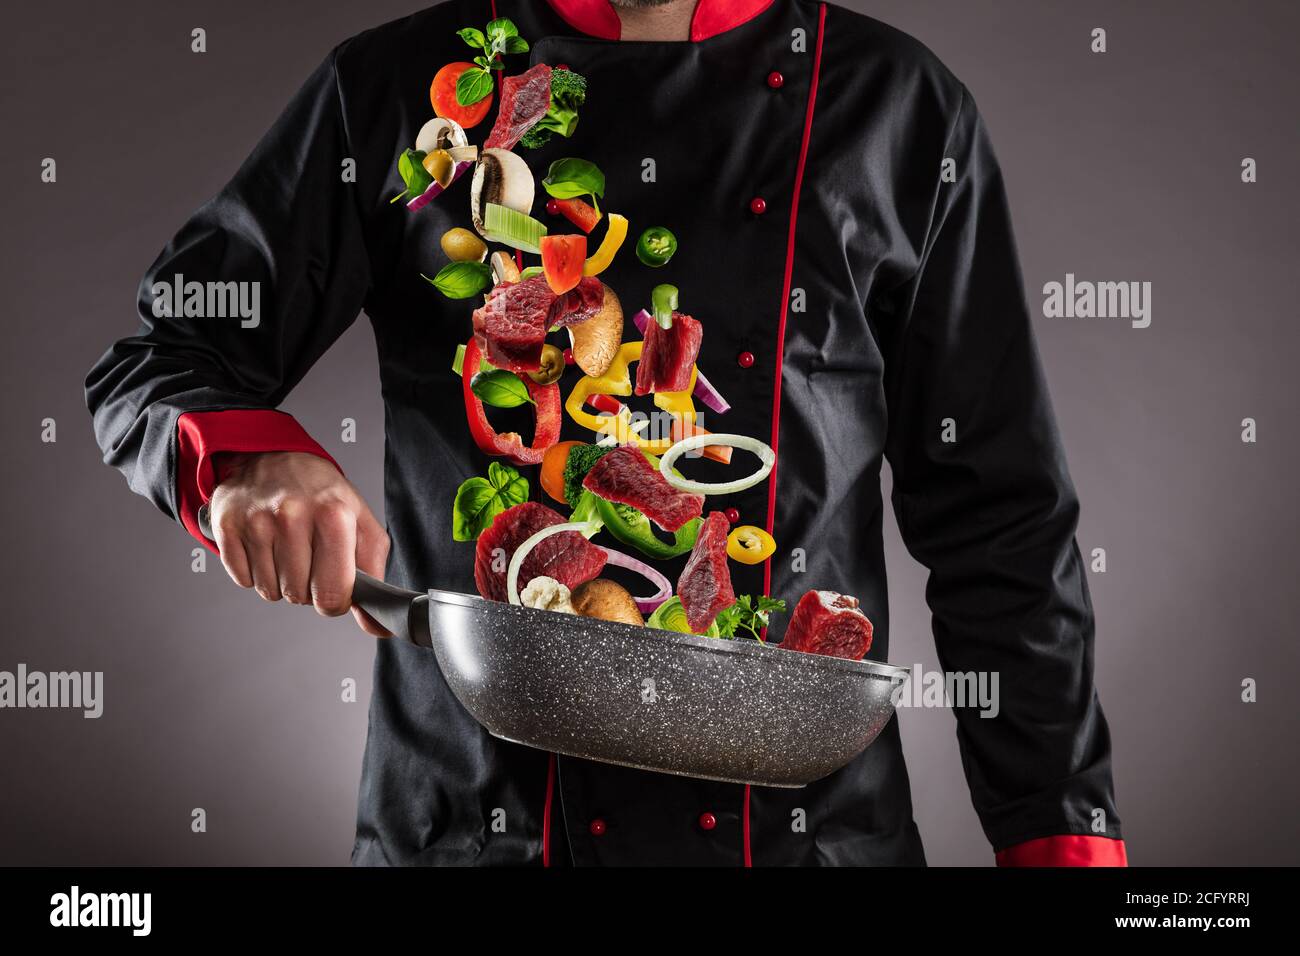 Gros plan du chef qui jette de la viande de bœuf avec des légumes dans l'air. Concept de préparation des aliments Banque D'Images